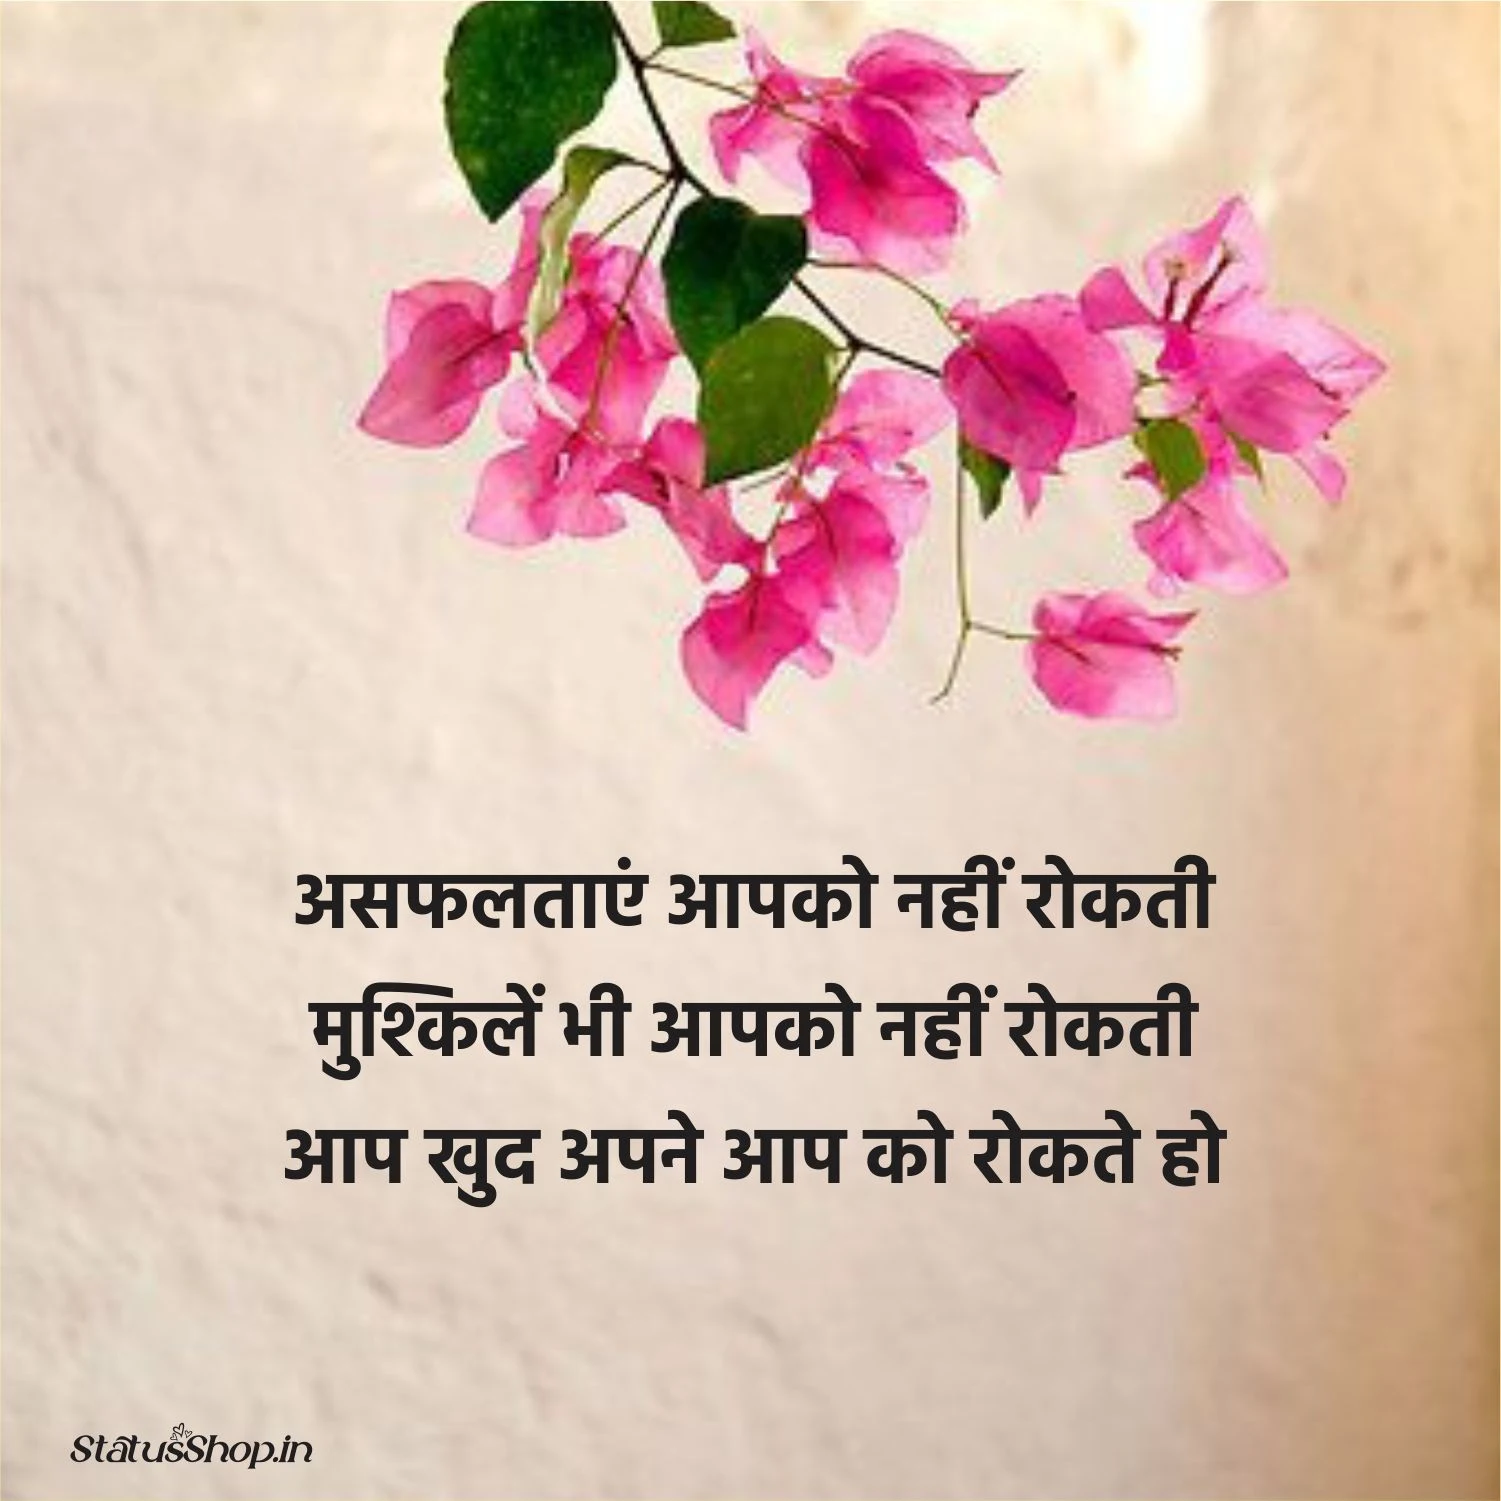 Hindi-Motivational-Quotes